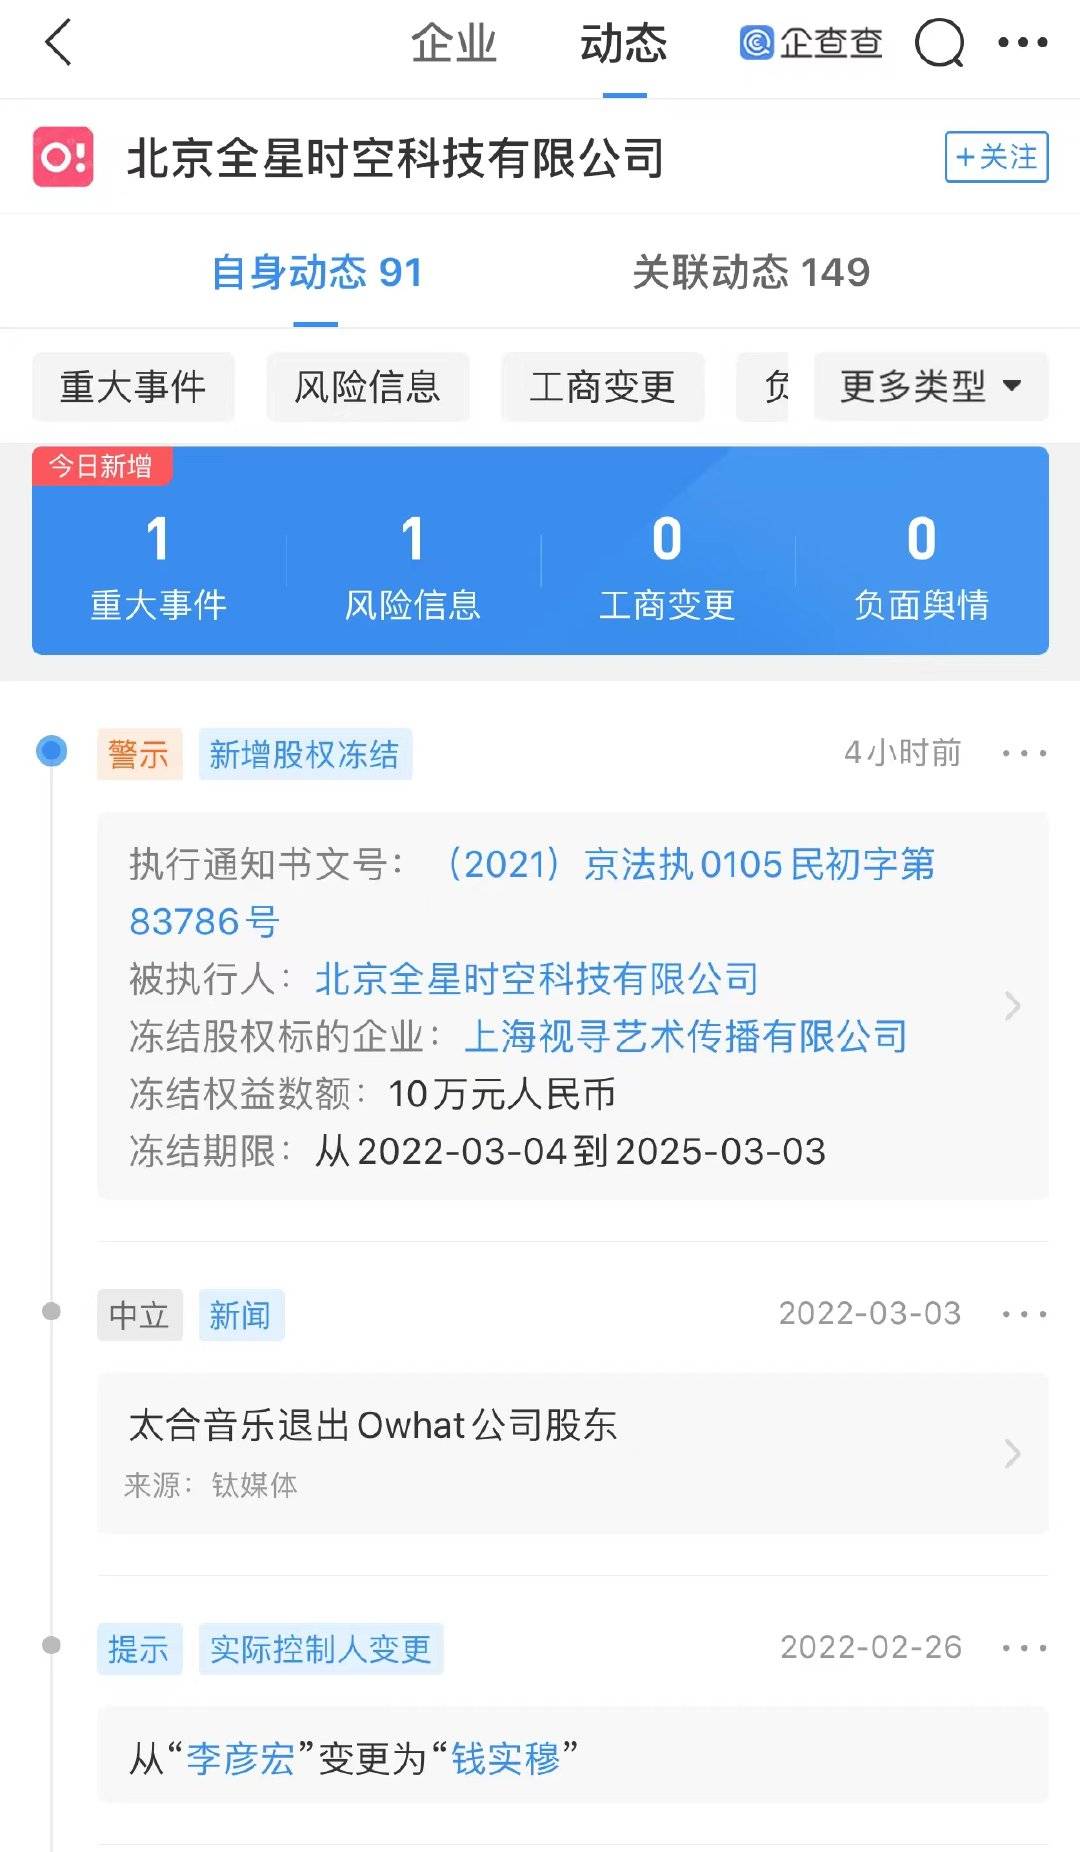 北京全星时空科技有限公司新增股权冻结